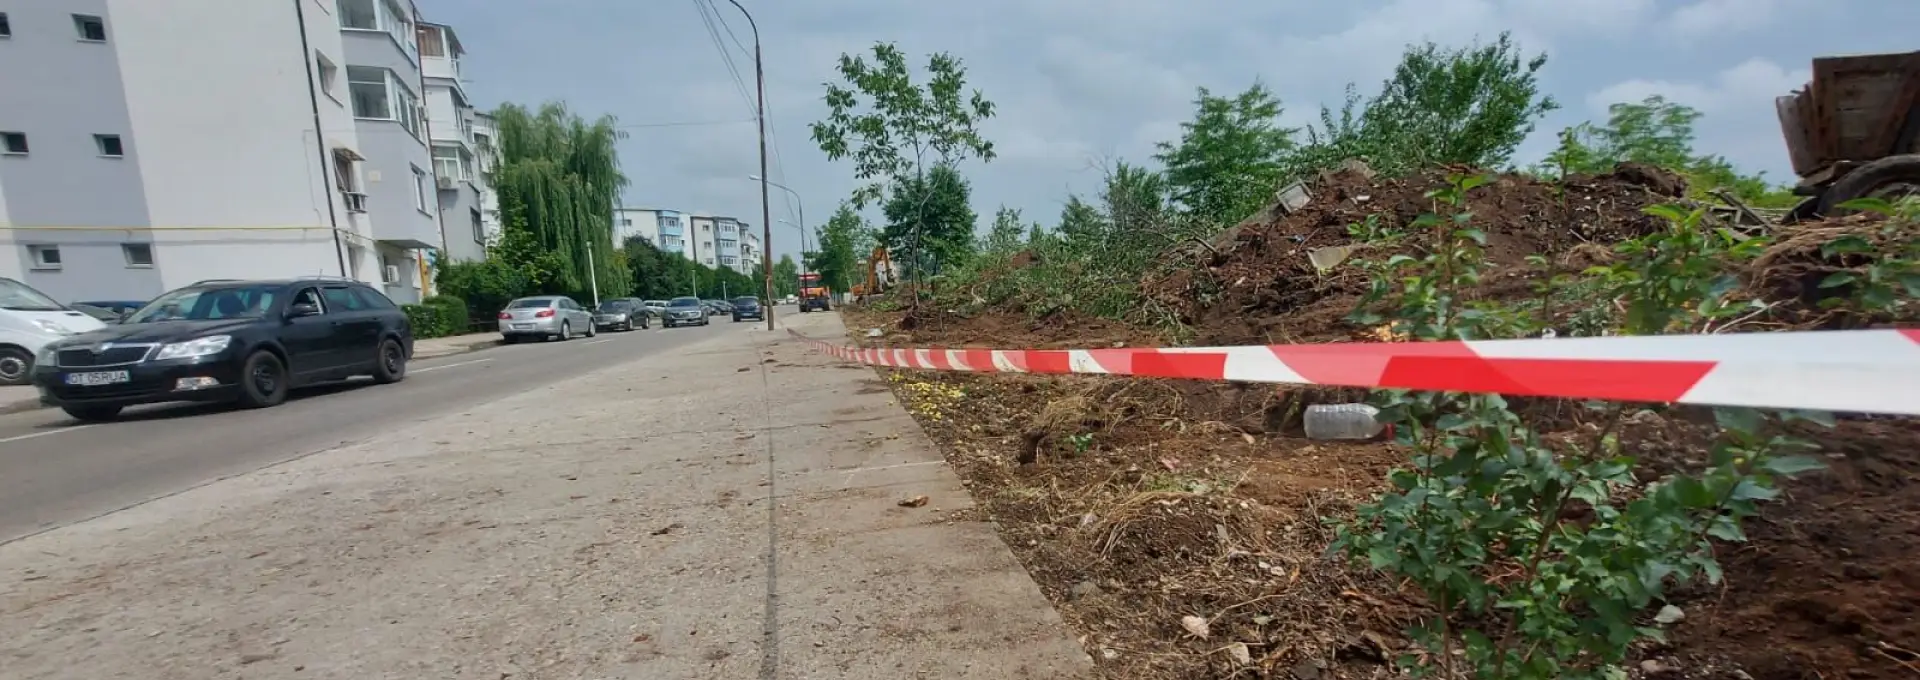 Foto  Slatina: O nouă bandă de circulaţie şi mai multe locuri de parcare, pe strada Tunari. Au început lucrările